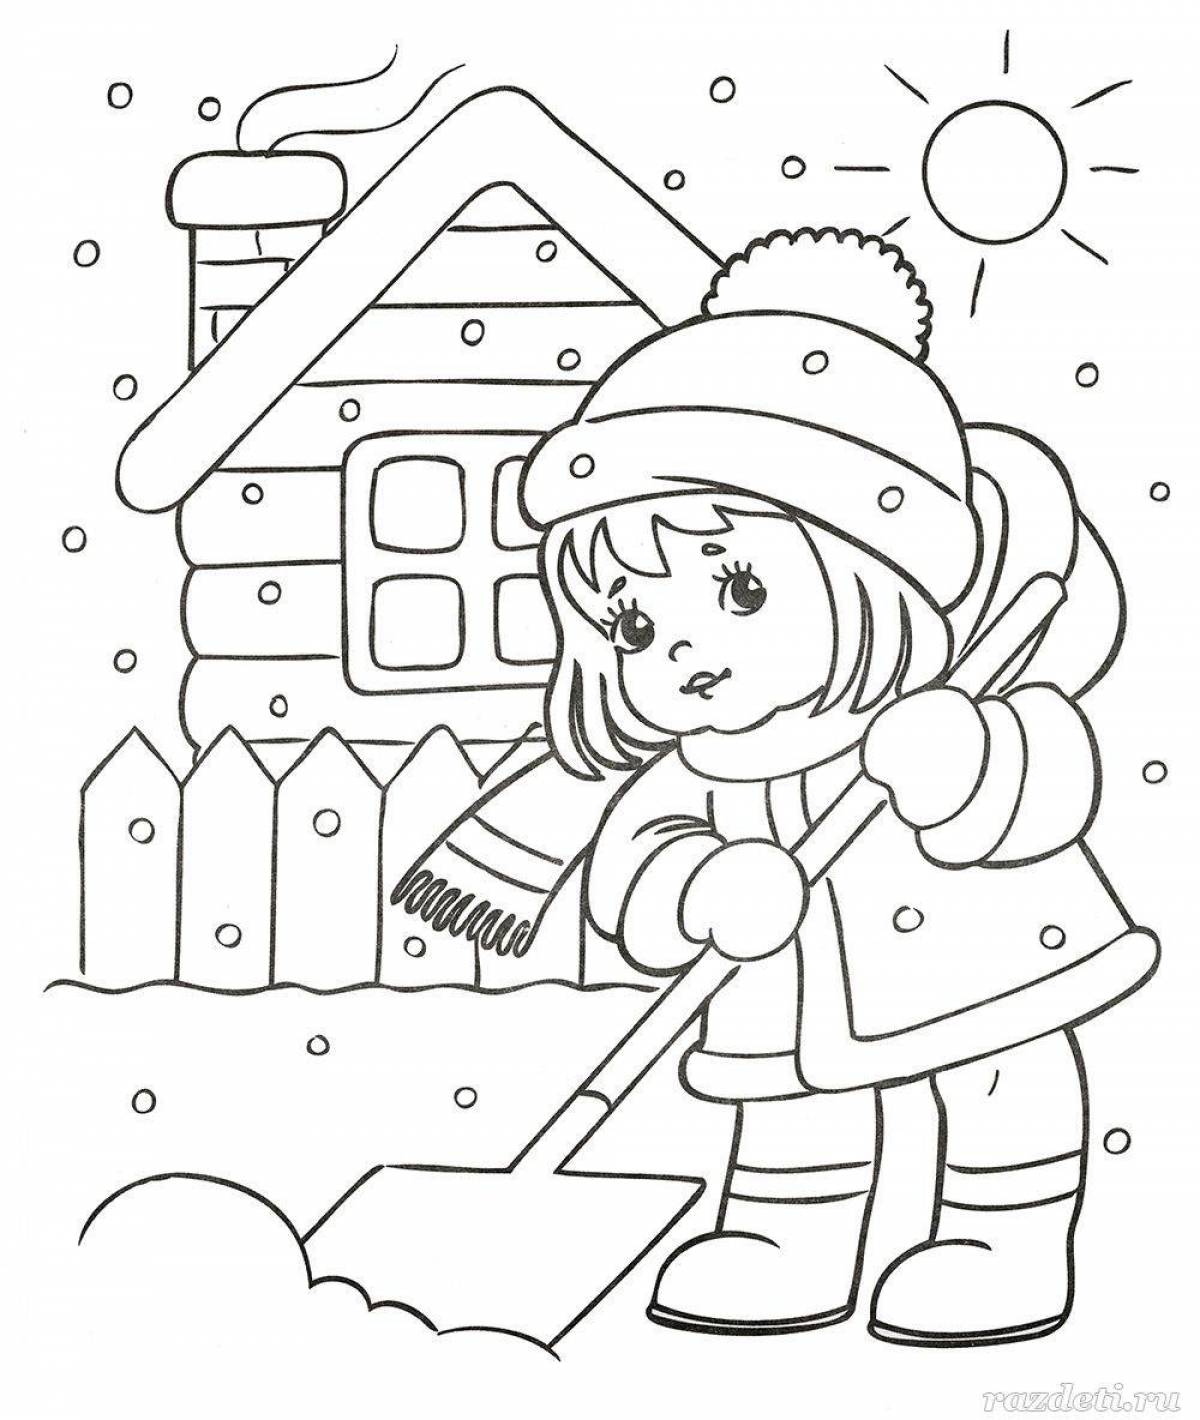 Радостная раскраска зима для детей 4-5 лет